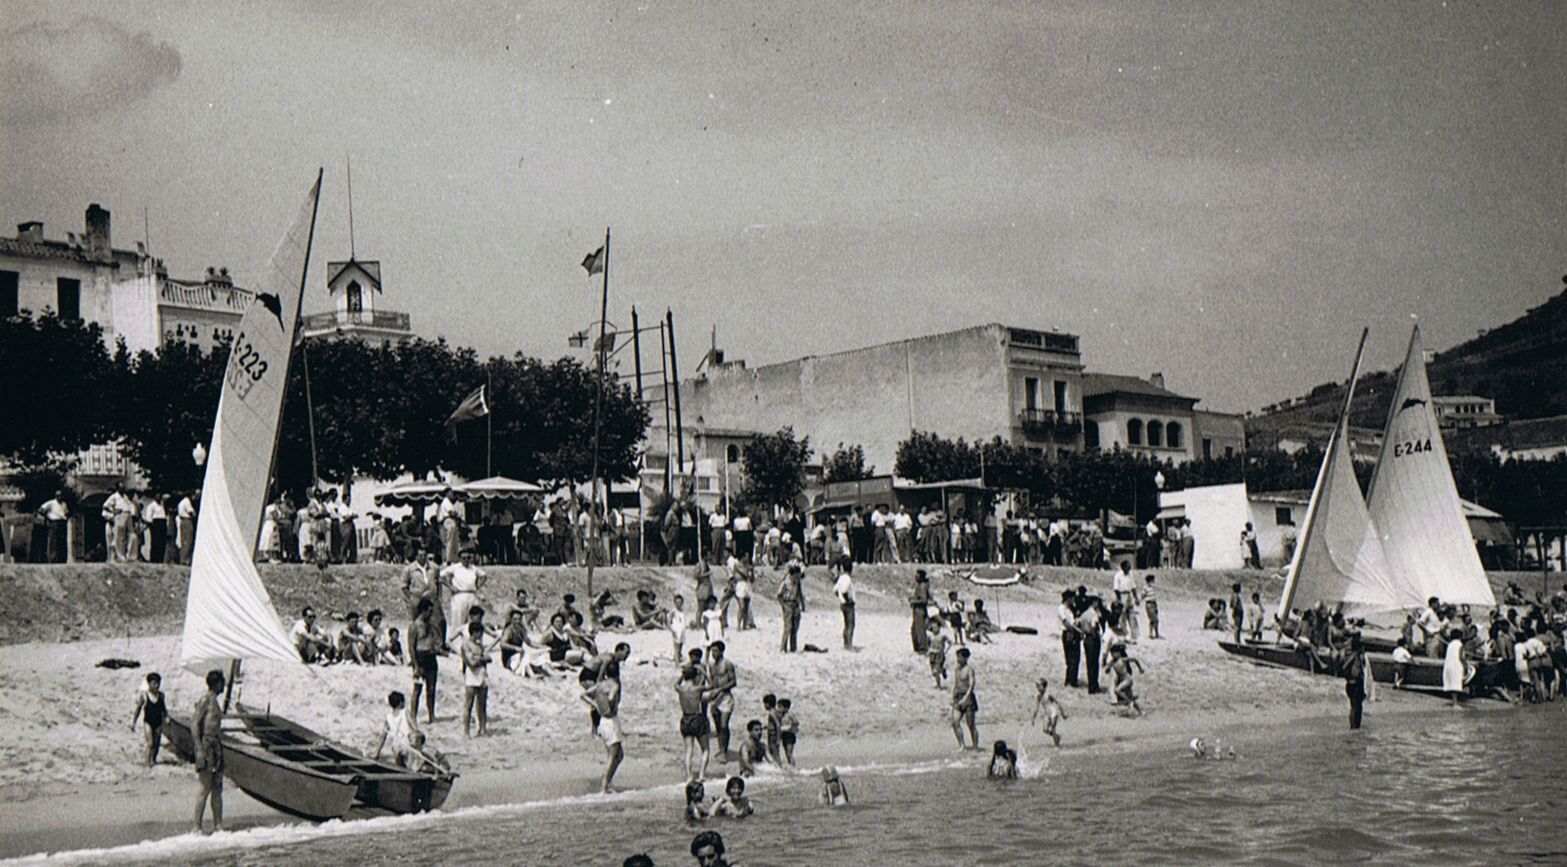 El Club de Vela Blanes organizó dos ediciones del Campeonato de España de Patines (1951 y 1955) 